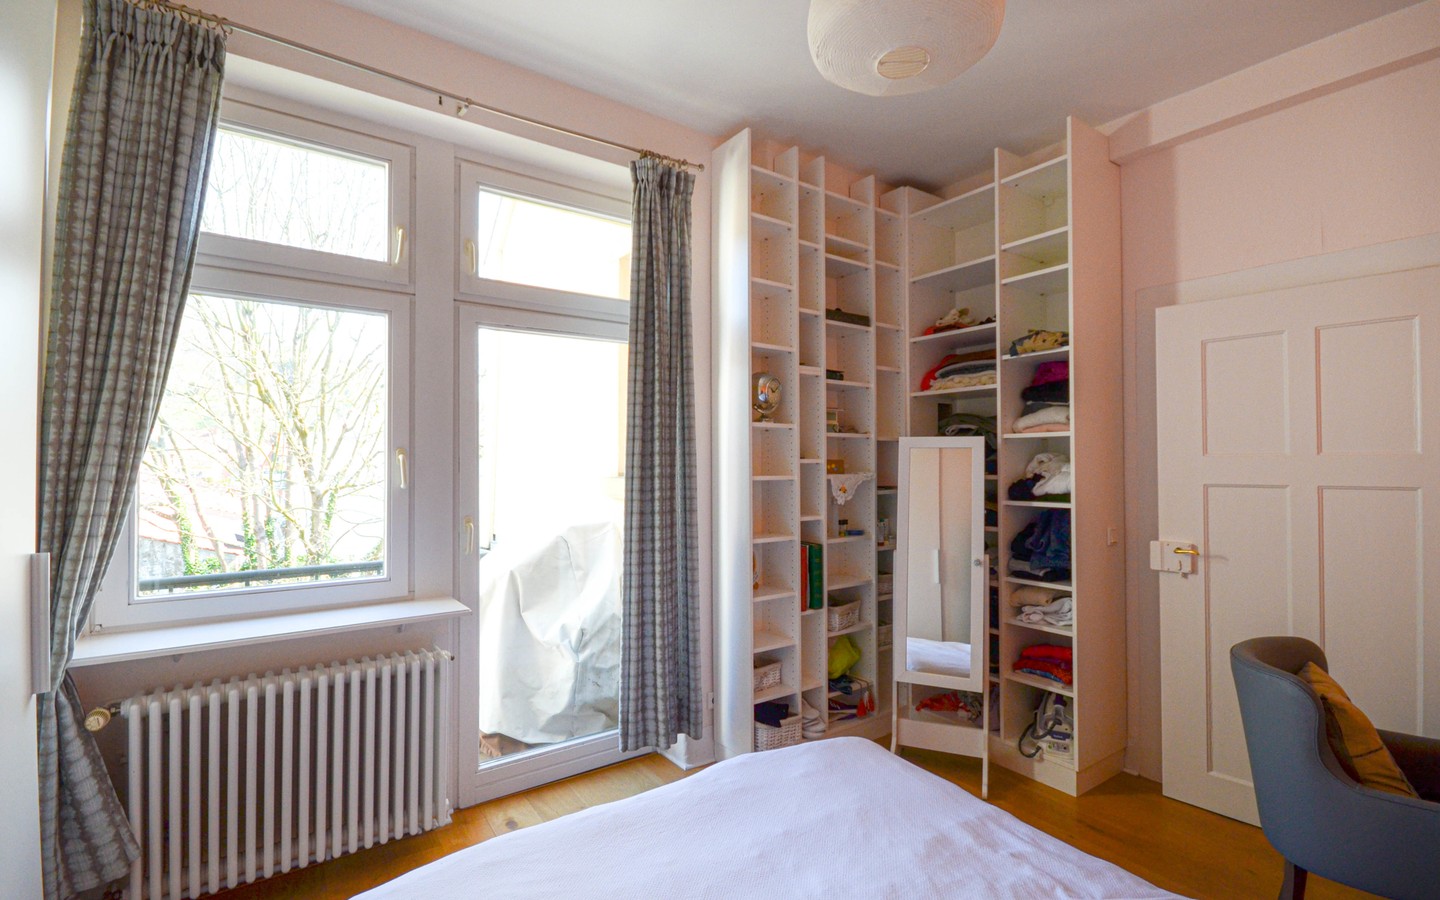 Schlafzimmer - Traumhaft schöne Fünfzimmerwohnung in Heidelberg-Neuenheim